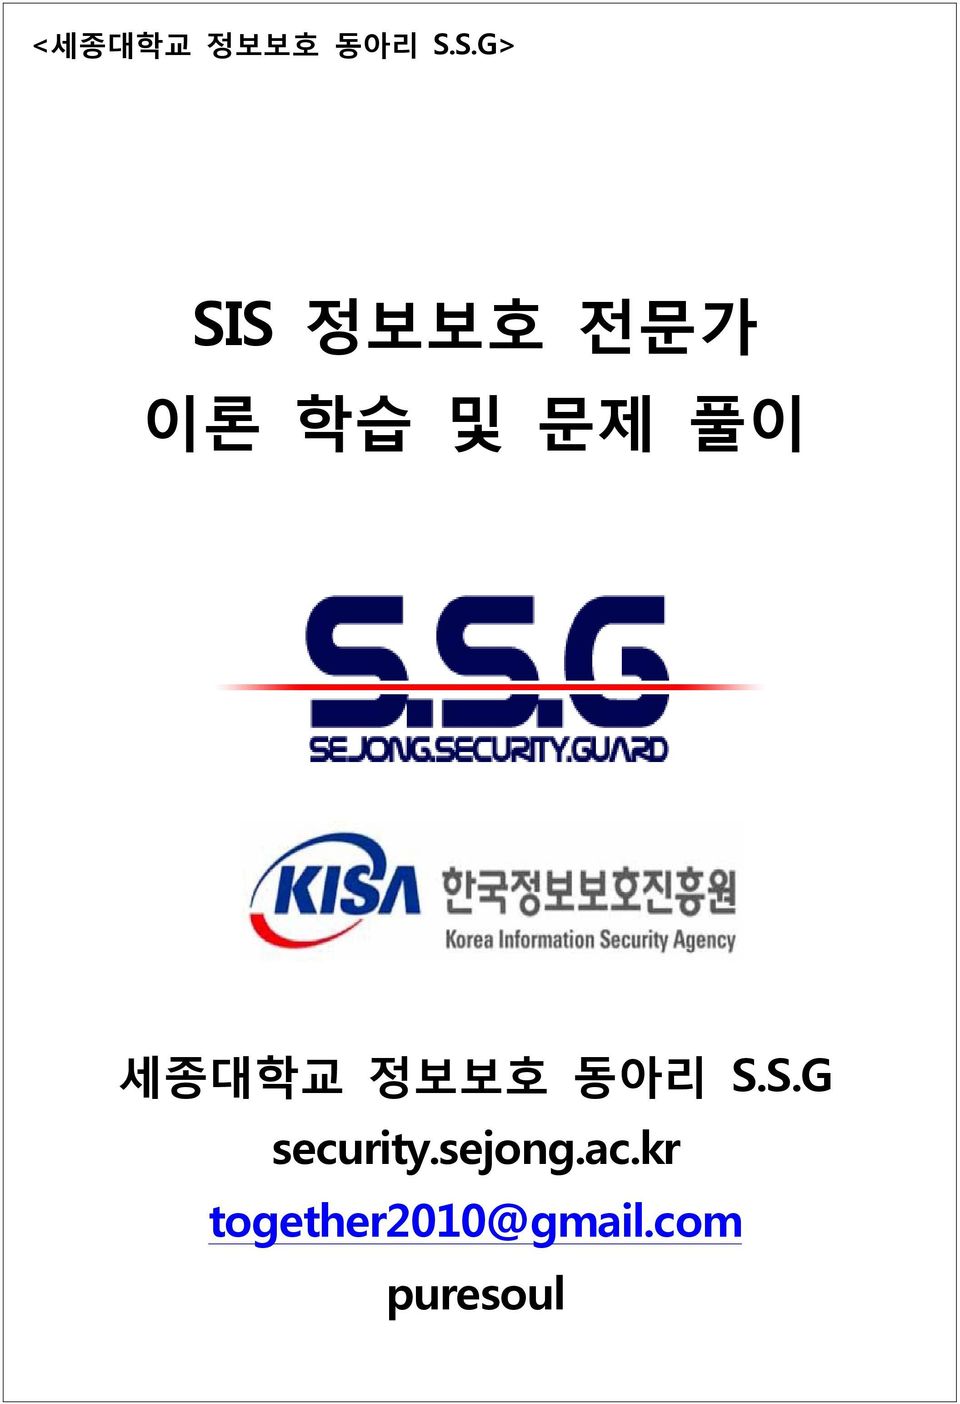 풀이 세종대학교 정보보호 동아리 S.S.G security.